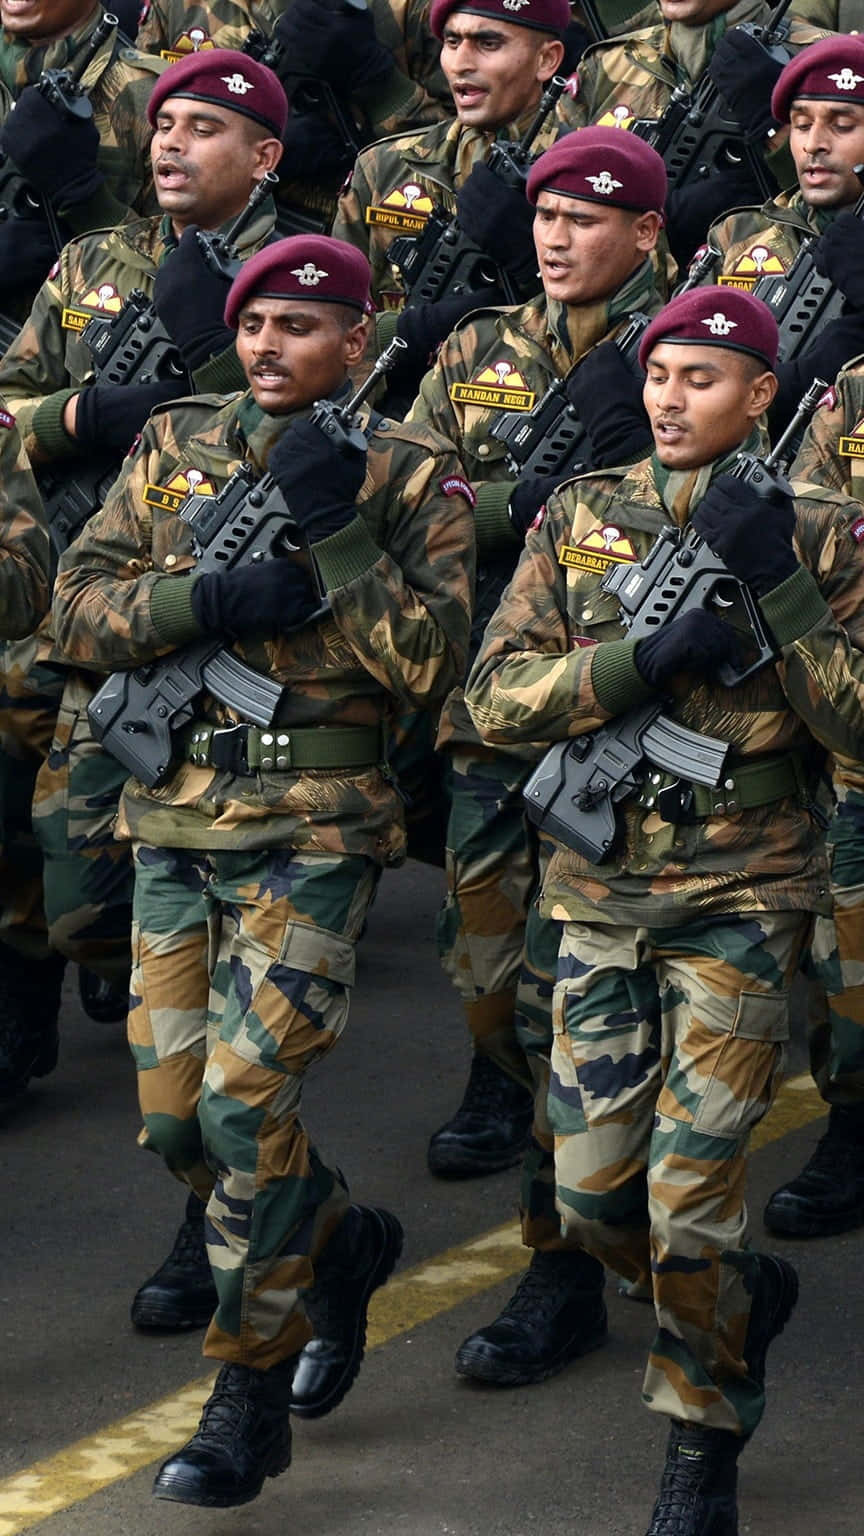 Elorgullo Y El Coraje De India: El Ejército Indio